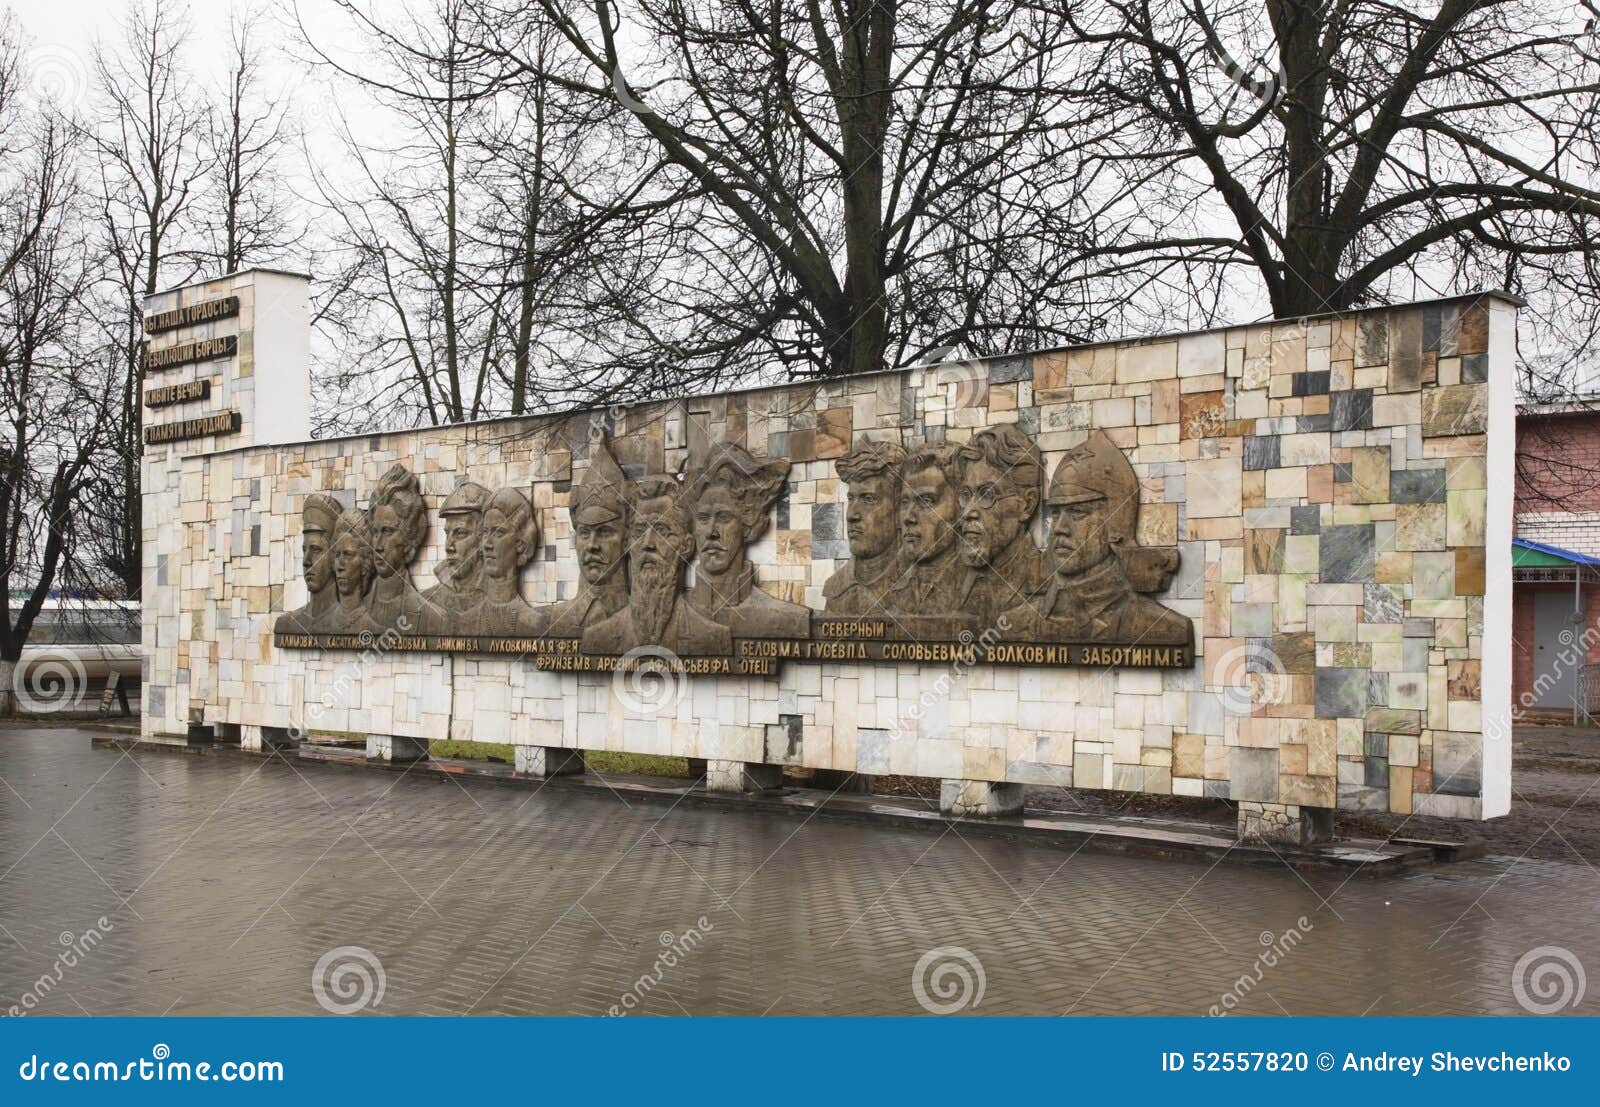 monument to revolutionaries in shuya. ivanovo region. russia